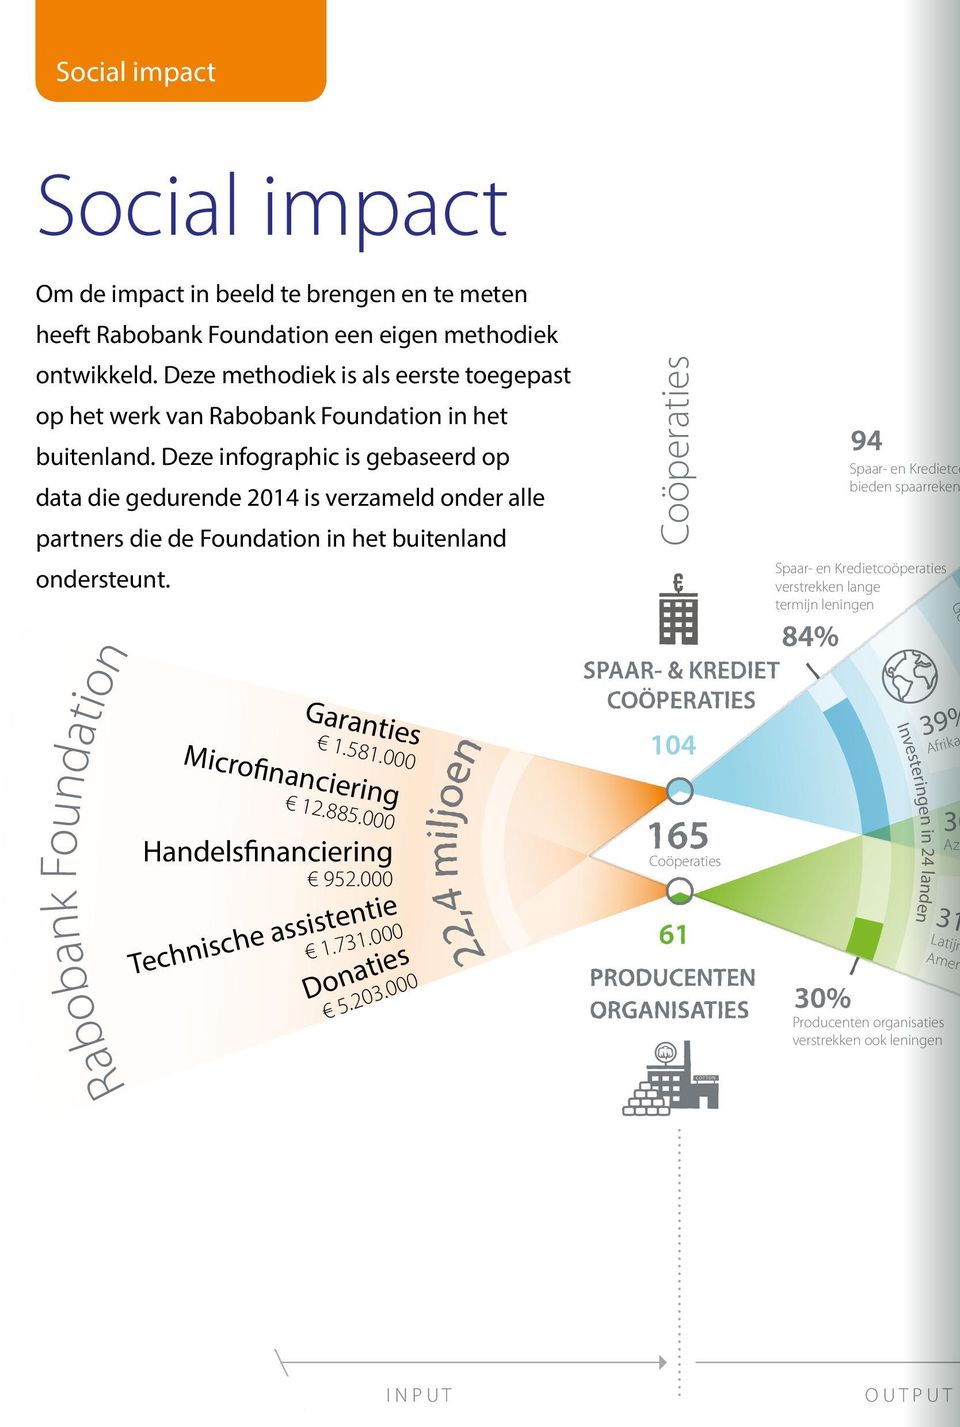 Deze infographic is gebaseerd op data die gedurende 2014 is verzameld onder alle partners die de Foundation Om de impact ondersteunt.